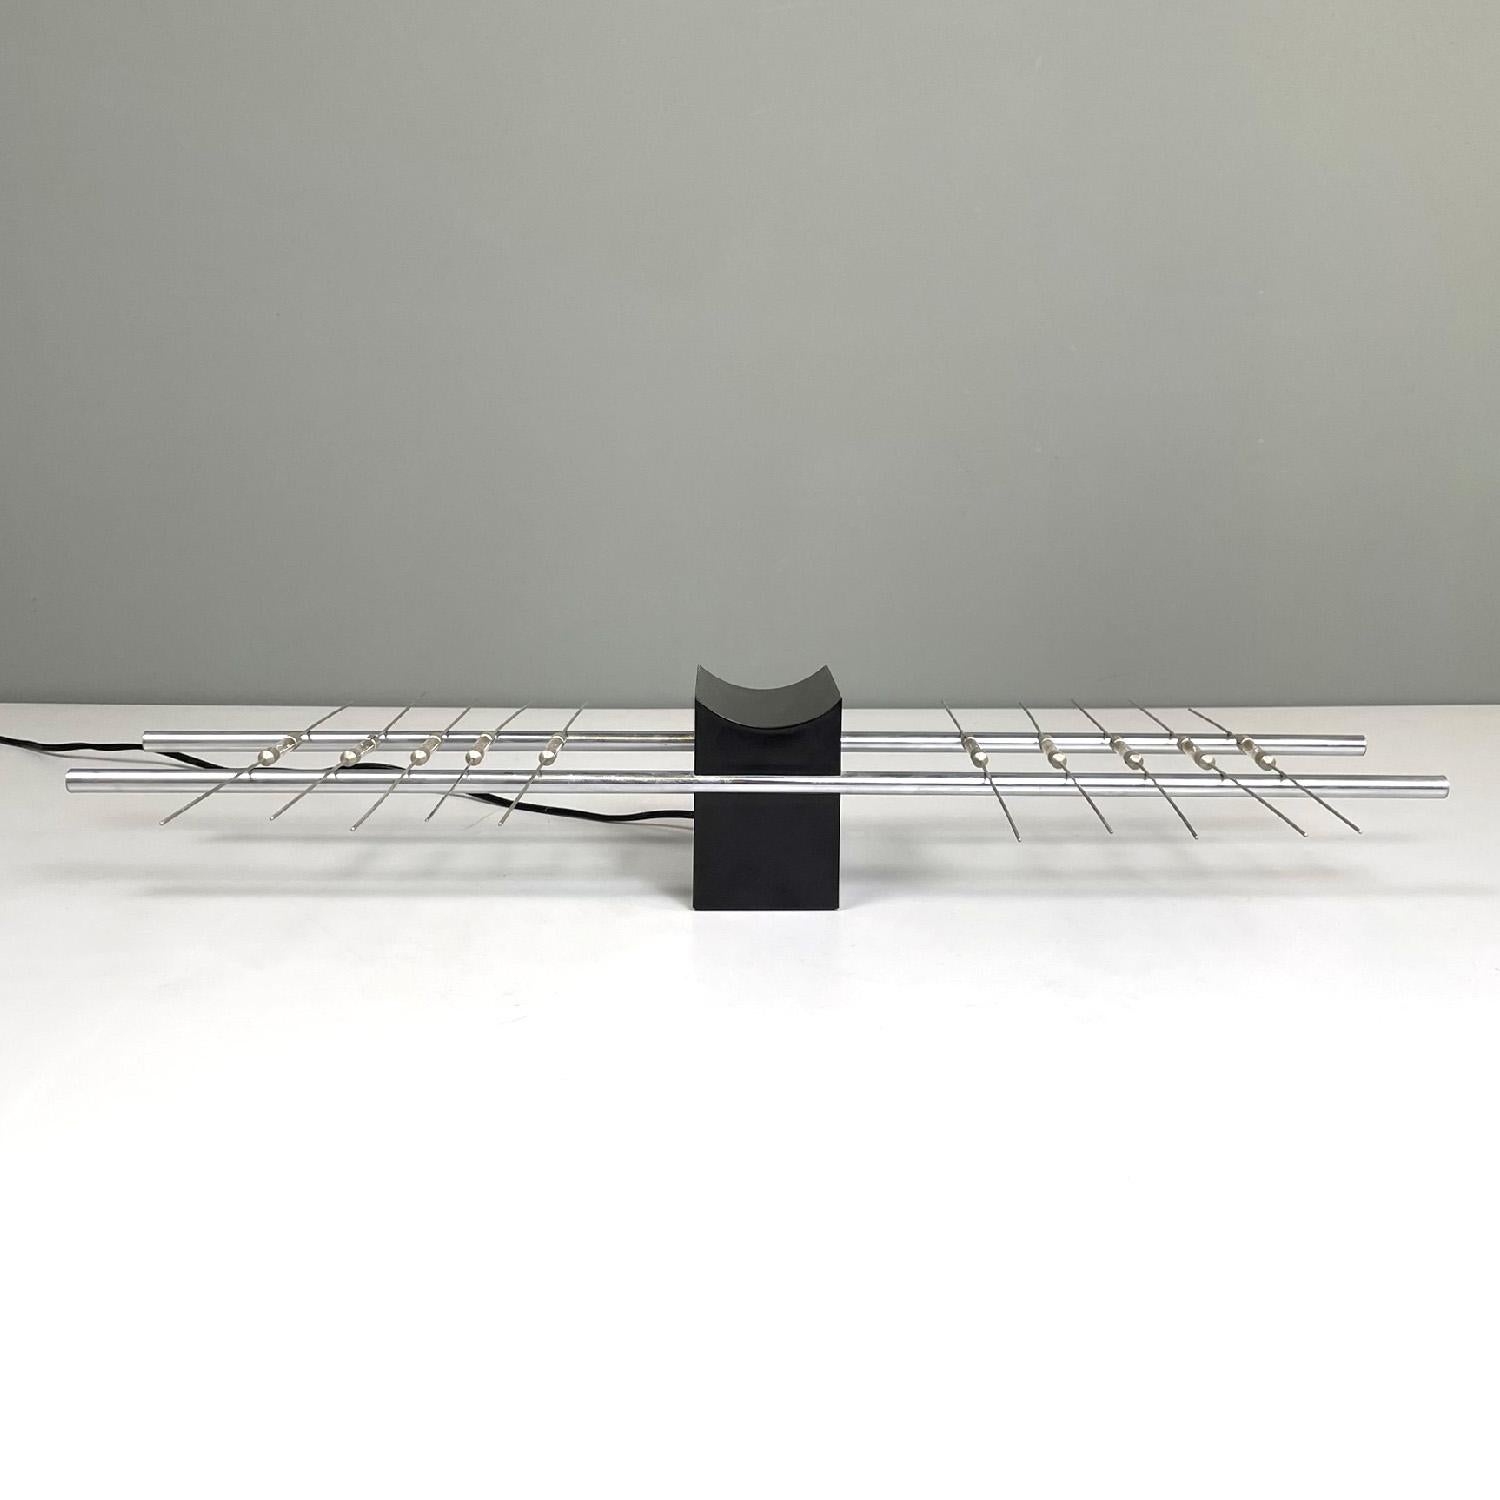 Lampe de table magnétique moderne italienne par Theodore Waddell pour Zanotta, 1971
Lampe de table à allumage magnétique. La base centrale est une structure à base rectangulaire avec un sommet convexe en plastique noir. Quatre tiges métalliques